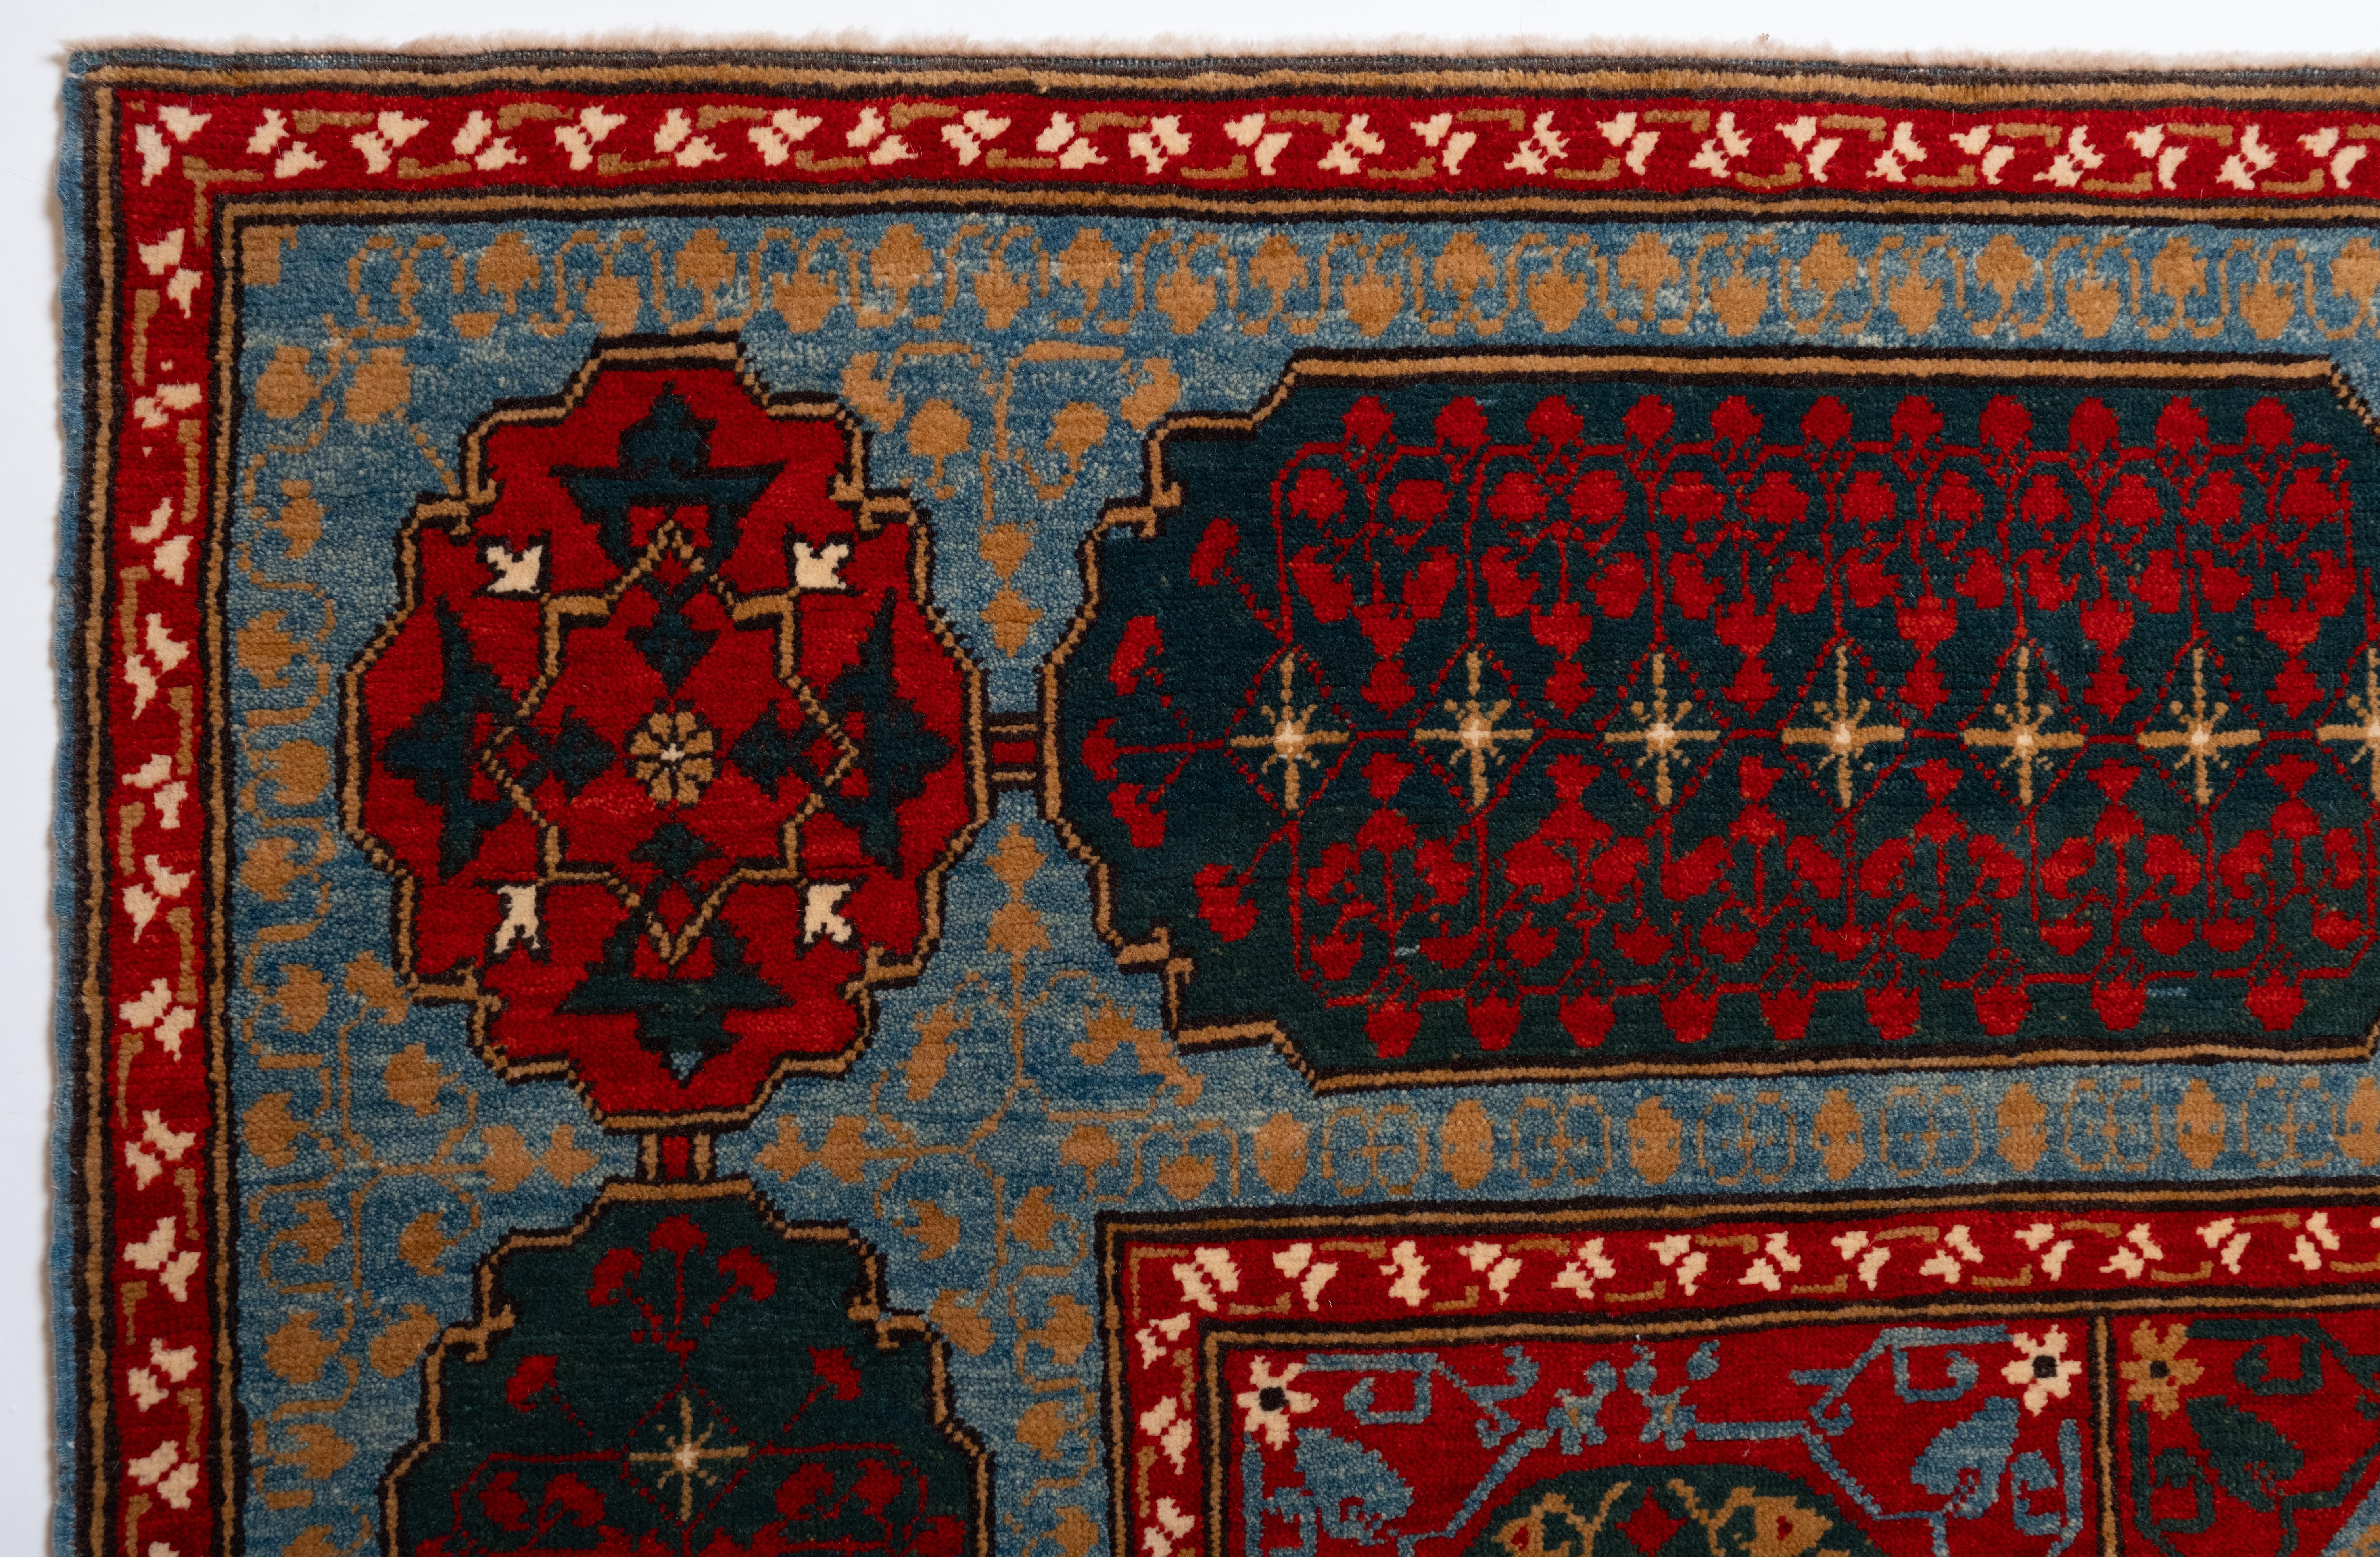 La source du tapis provient du livre How to Read - Islamic Carpets, Walter B. Denny, The Metropolitan Museum of Art, New York 2014 fig.61,62. Ce tapis à cinq étoiles a été conçu au début du XVIe siècle par la sultane mamluke du Caire, en Égypte. Il